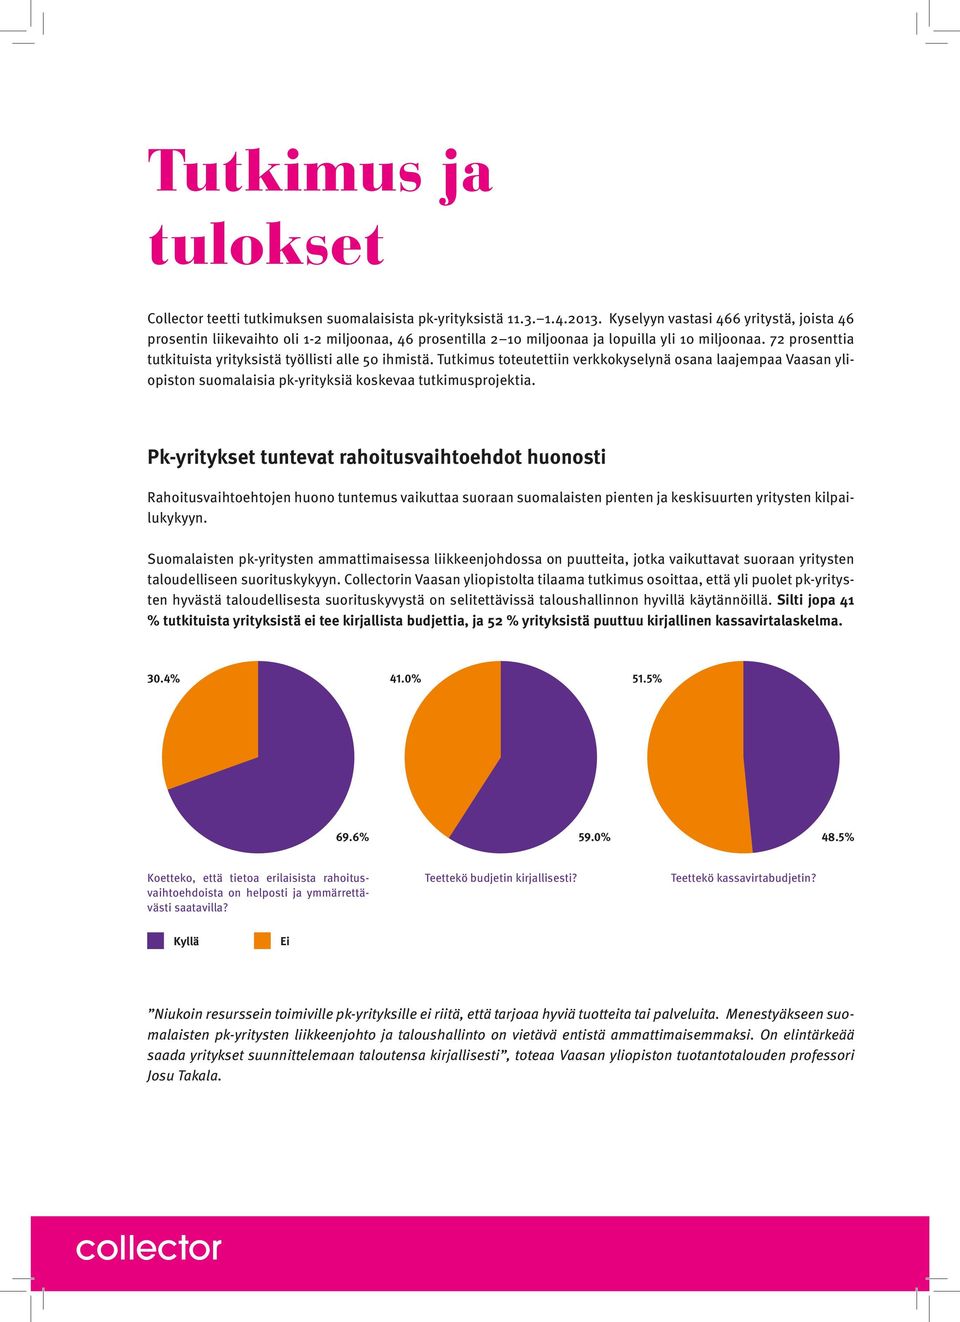 Tutkimus toteutettiin verkkokyselynä osana laajempaa Vaasan yliopiston suomalaisia pkyrityksiä koskevaa tutkimusprojektia.